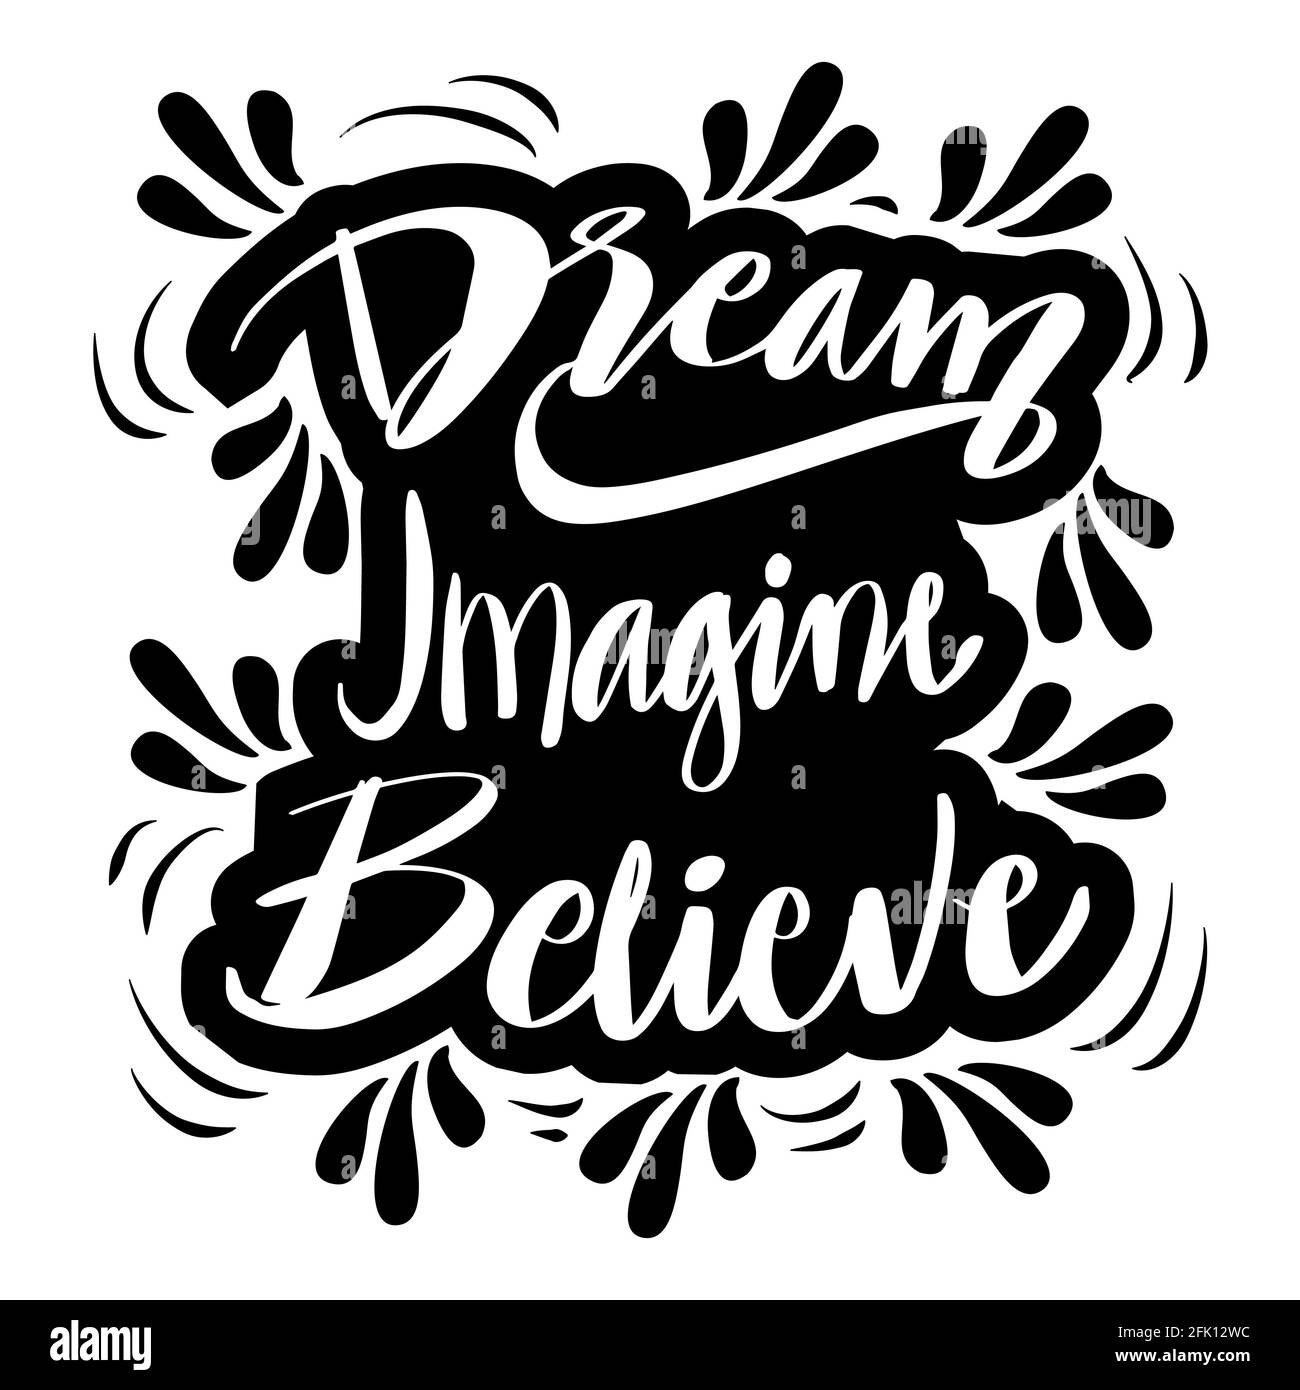 Sogno immaginare credere, lettere a mano, citazione motivazionale Foto Stock